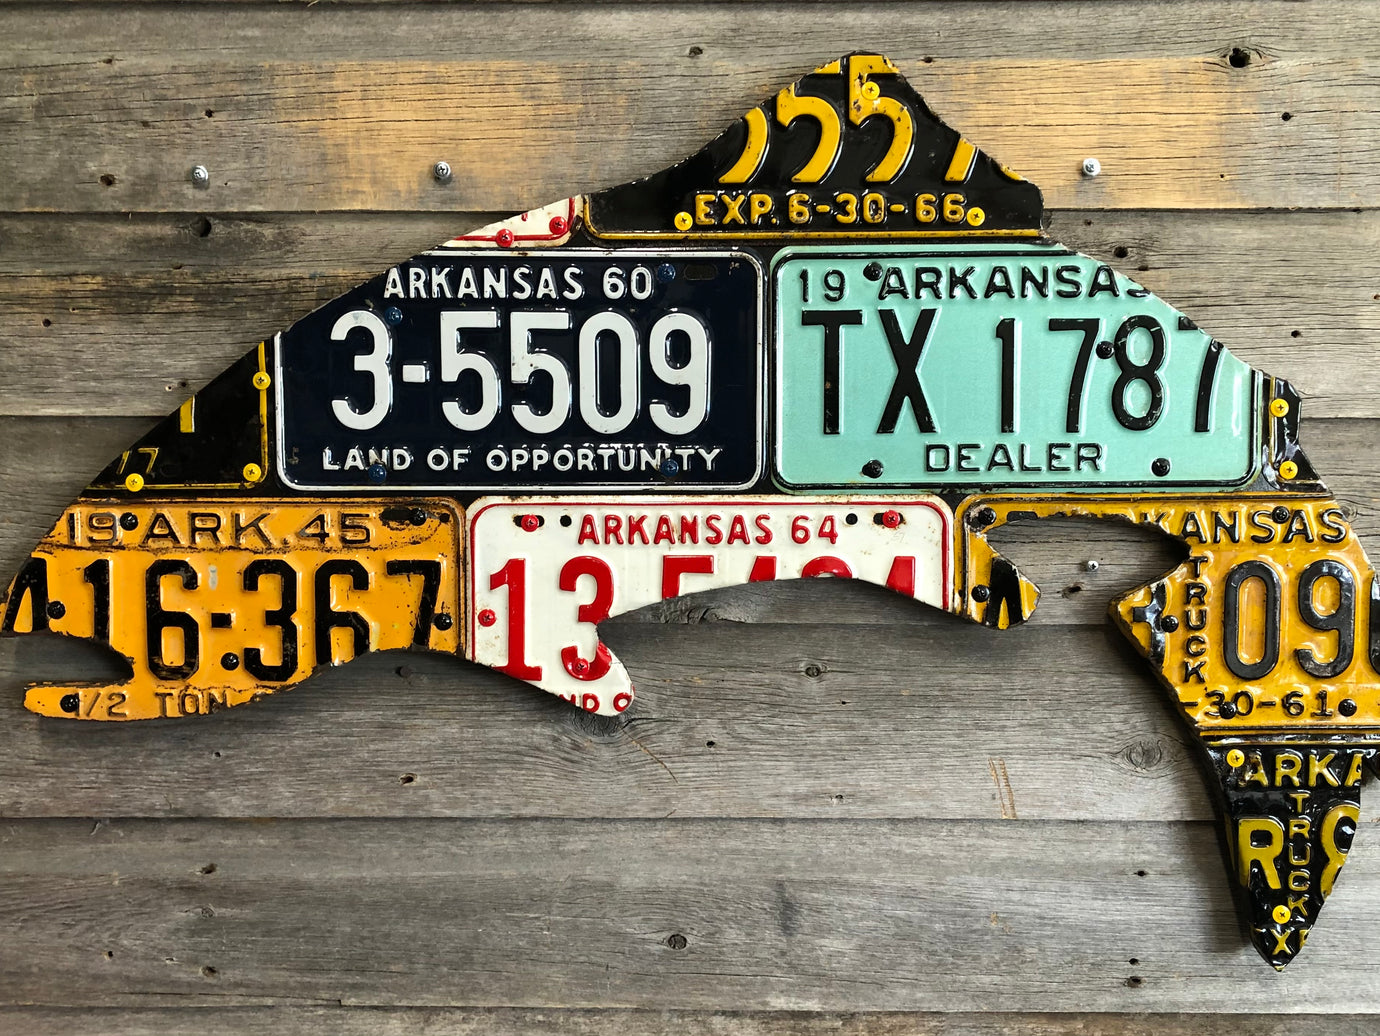 Arkansas Antique Trout License Plate Art